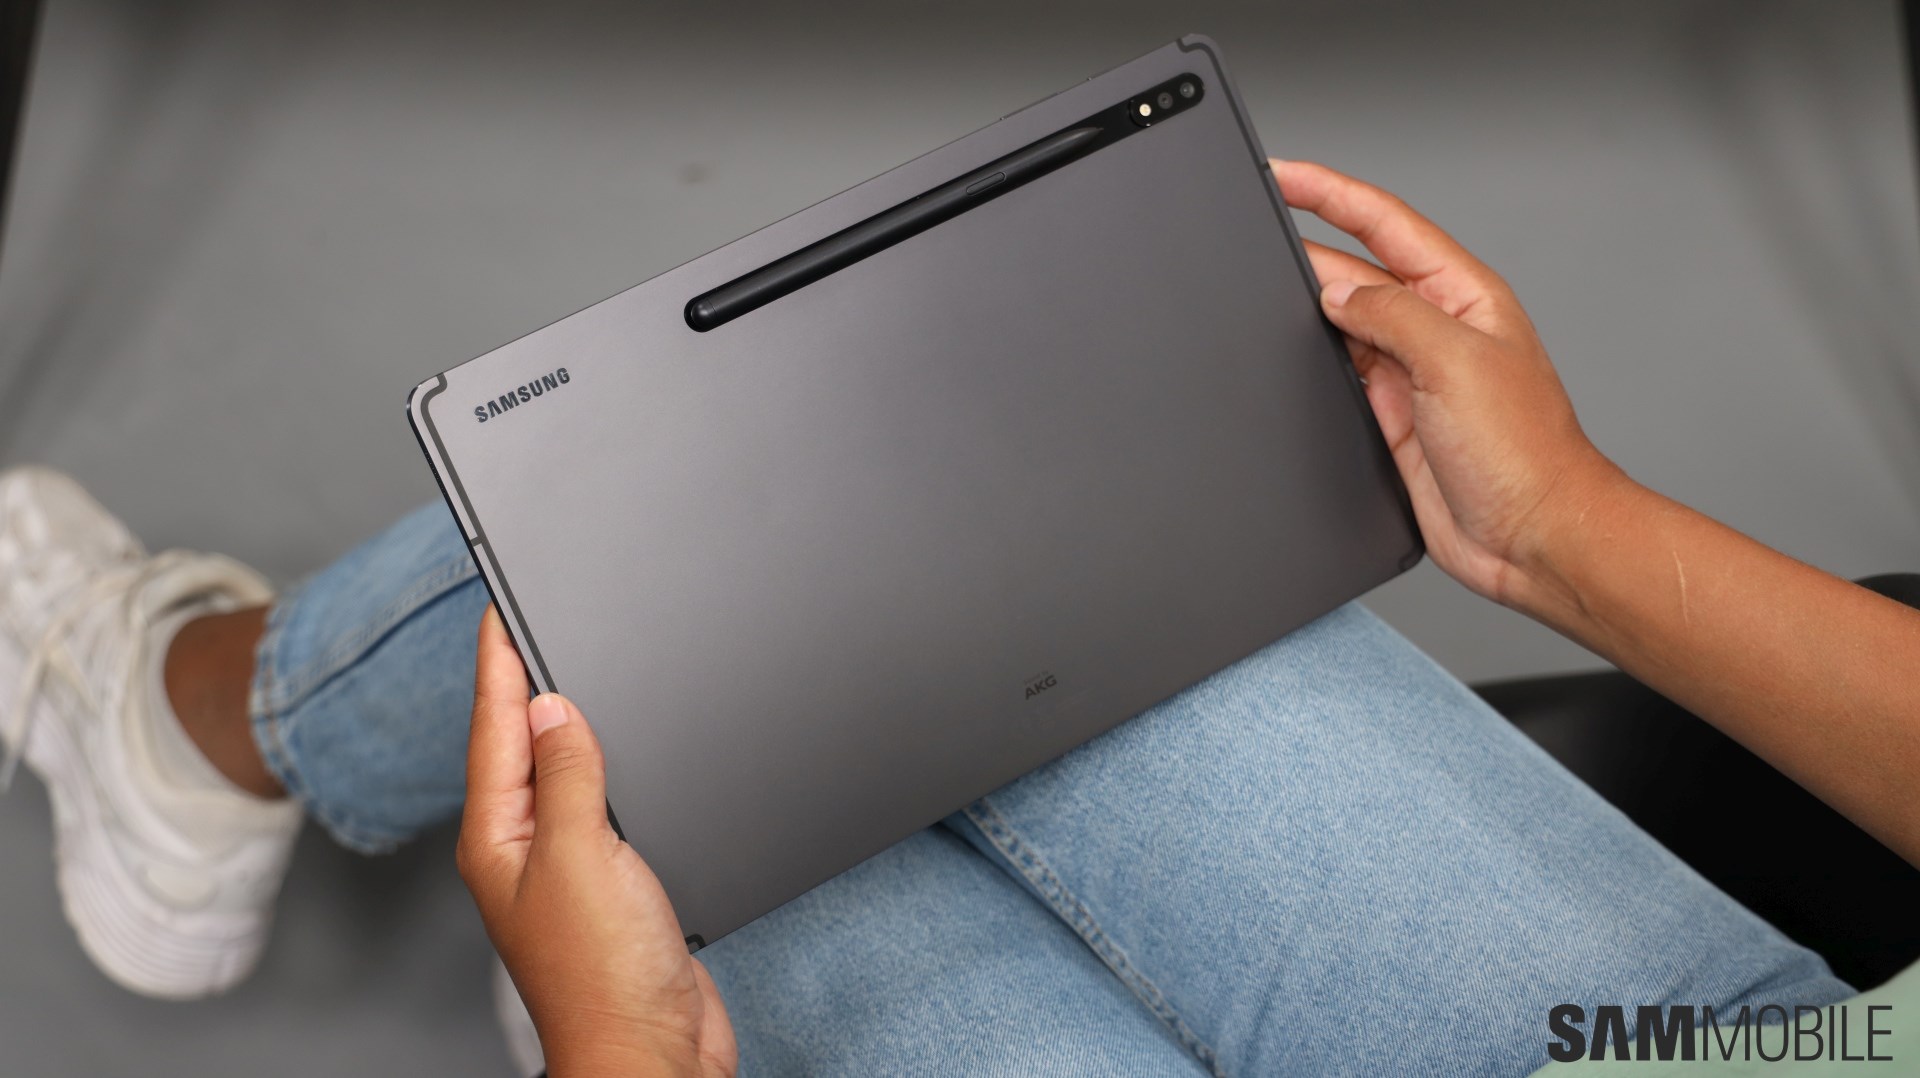 Galaxy Tab S7+ (SM-T975NZKZXTC) Specs & Reviews